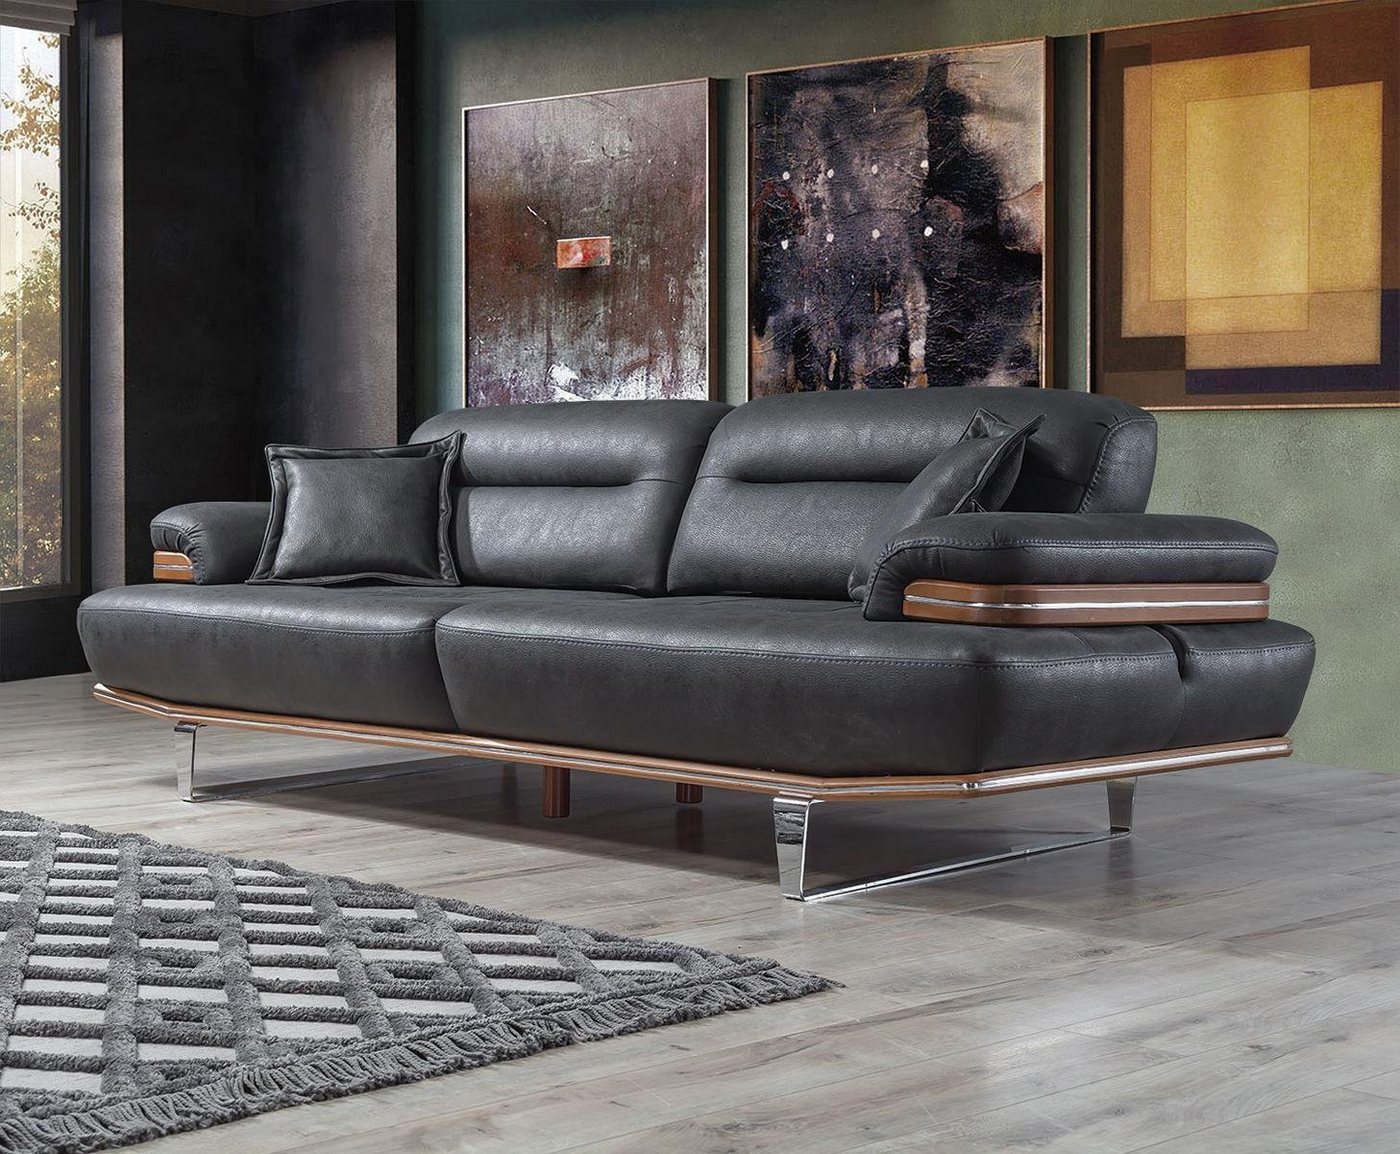 JVmoebel Sofa Dreisitzer Luxus Sofa 3 Sitz Sofas Sitz Leder Design Couch Möbel Stil, 1 Teile, Made in Europa von JVmoebel